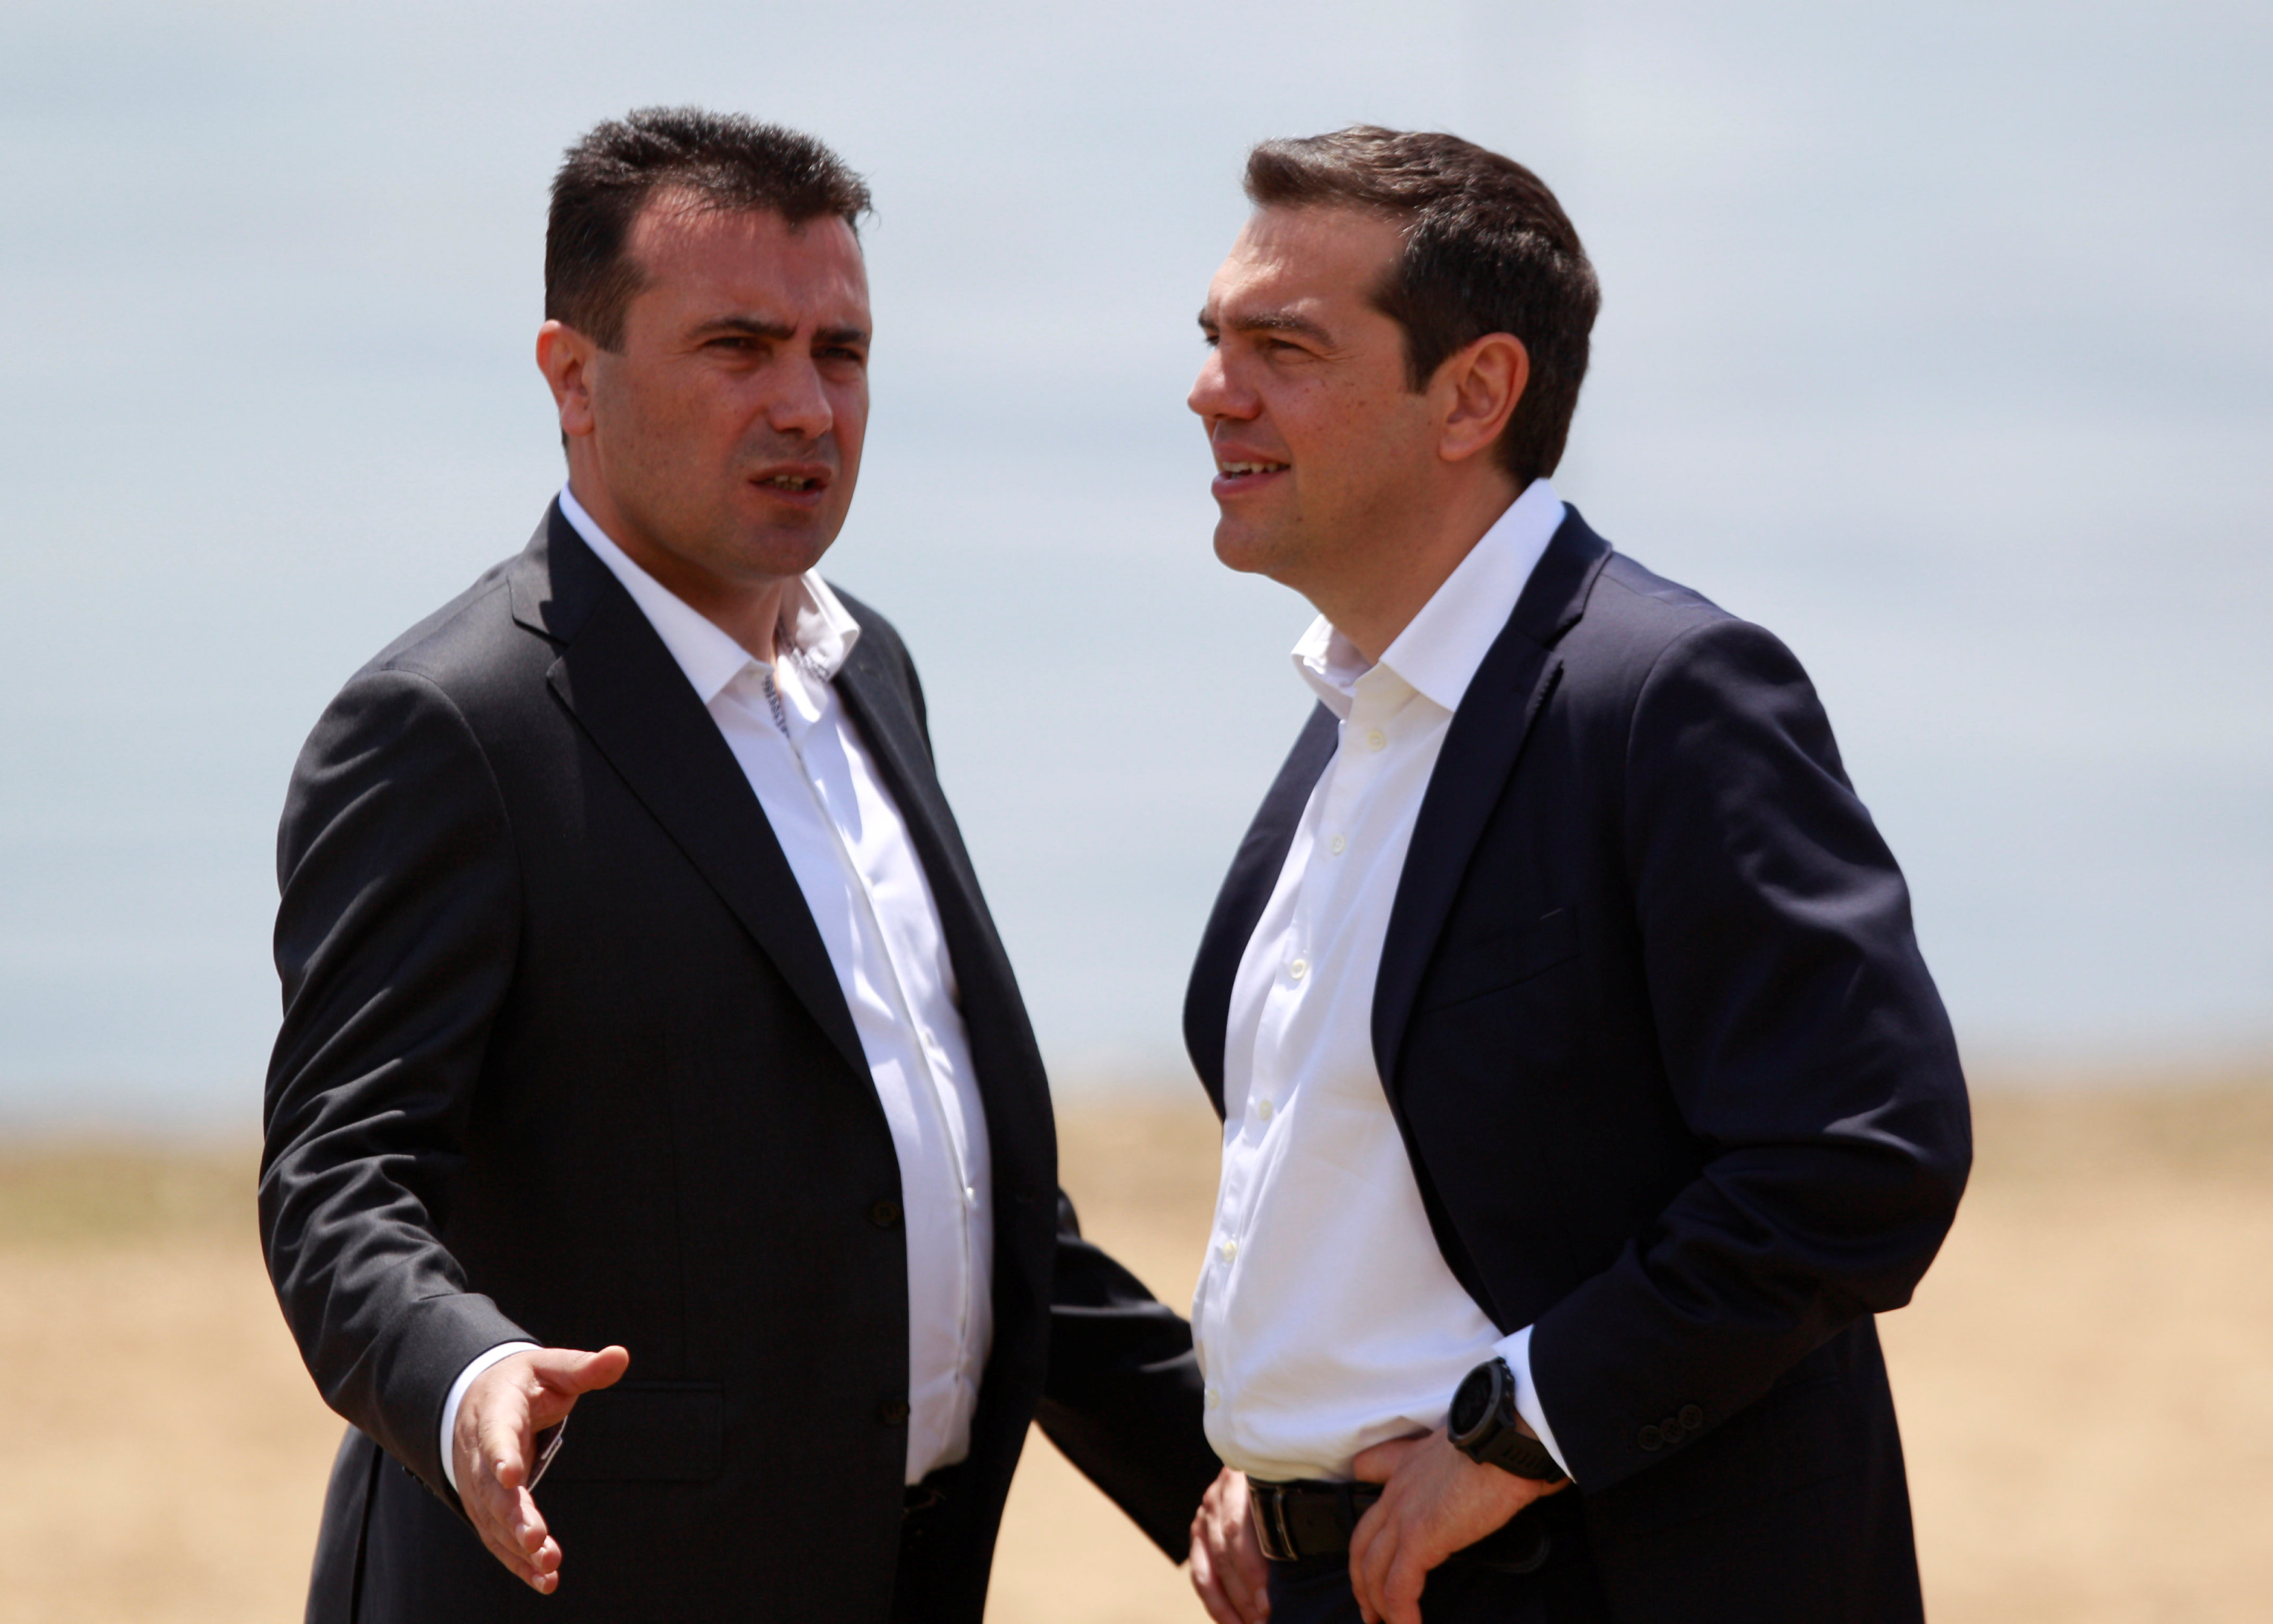 رئيسي الوزراء اليوناني والمقدوني تسيبراس وزاييف أثناء محادثات الشهر الماضي.  أوجنين تيوفيلوفسكي/رويترز